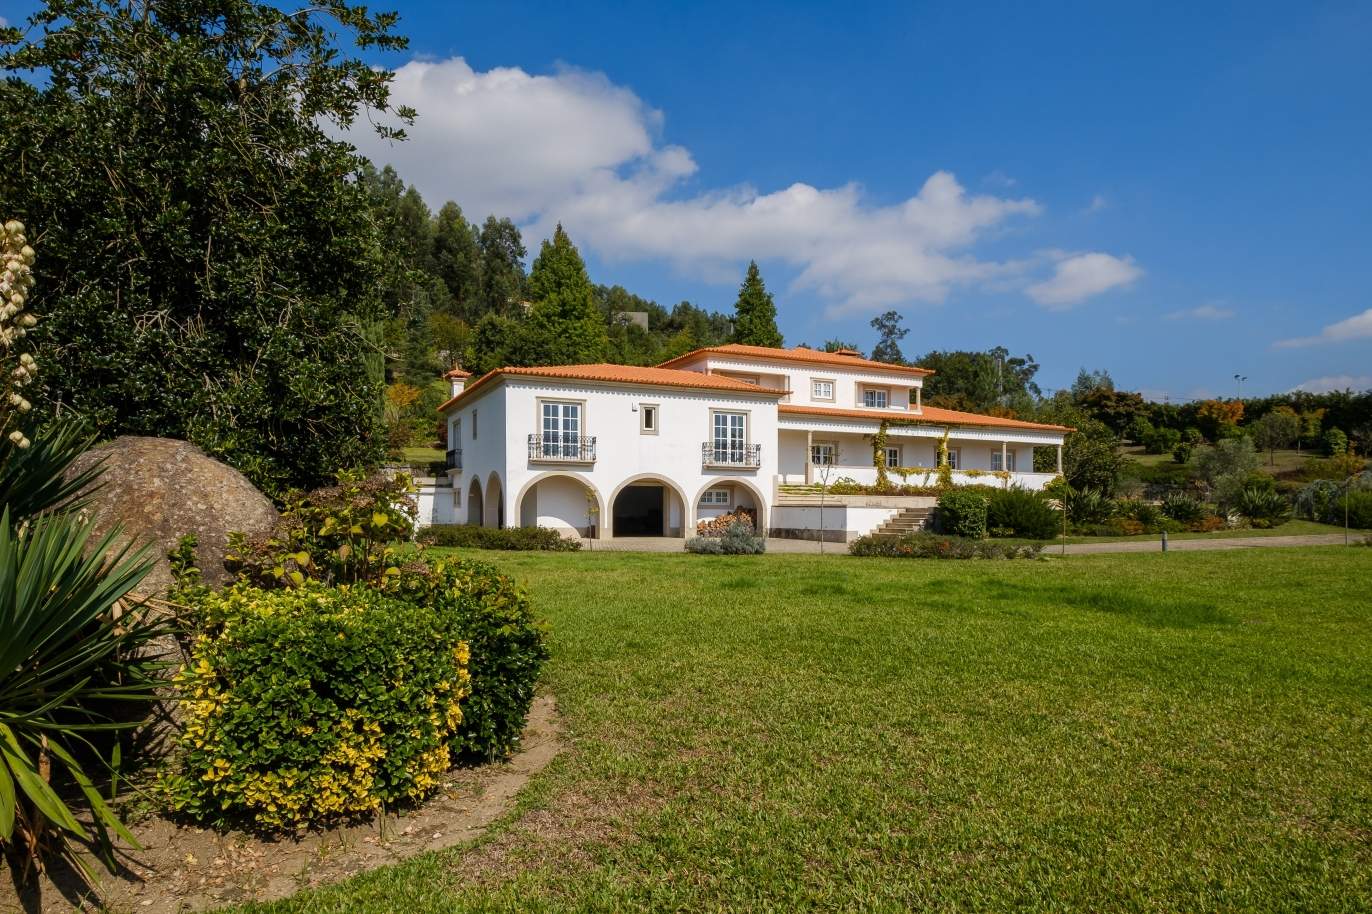 Casa típica portuguesa com jardim e piscina, para venda, Guimarães, Portugal_153290